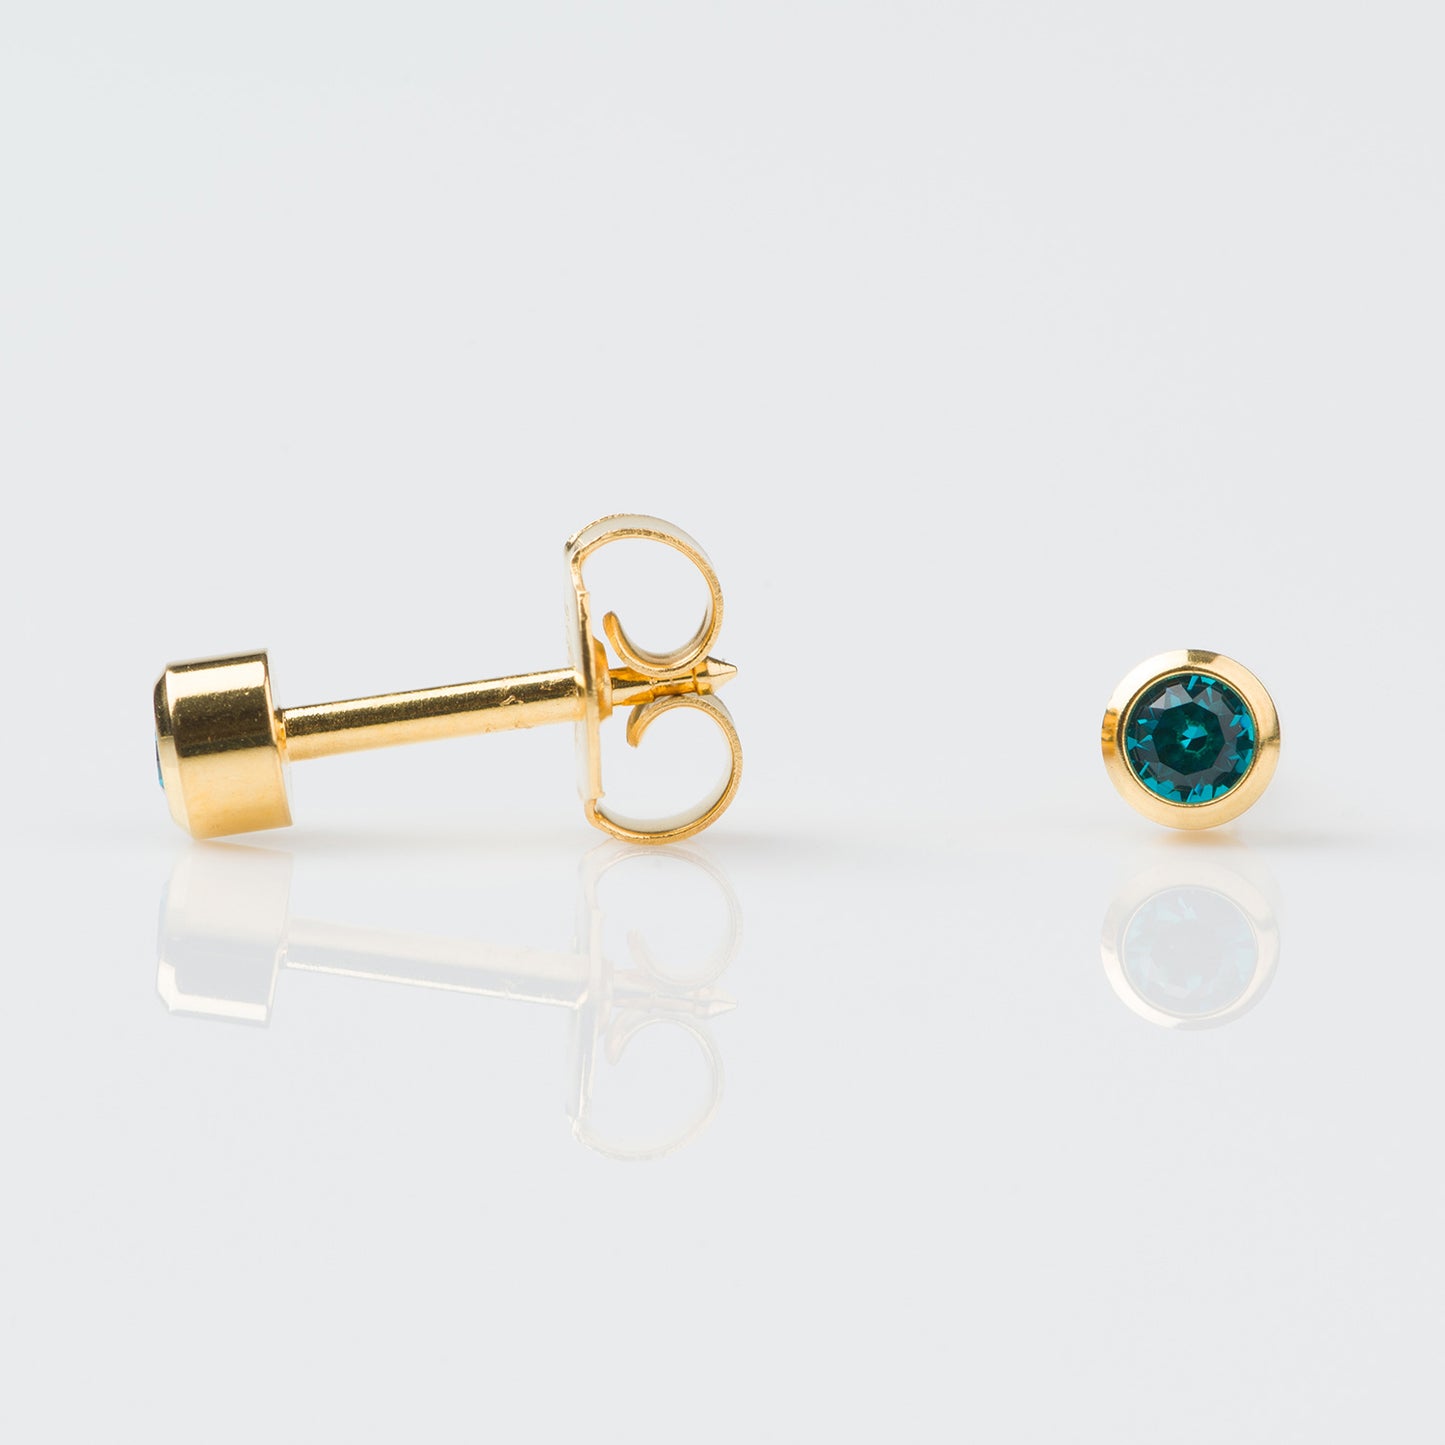 STUDEX Regular Gold Plated Stainless Steel Bezel December - Blue Zircon Earrings